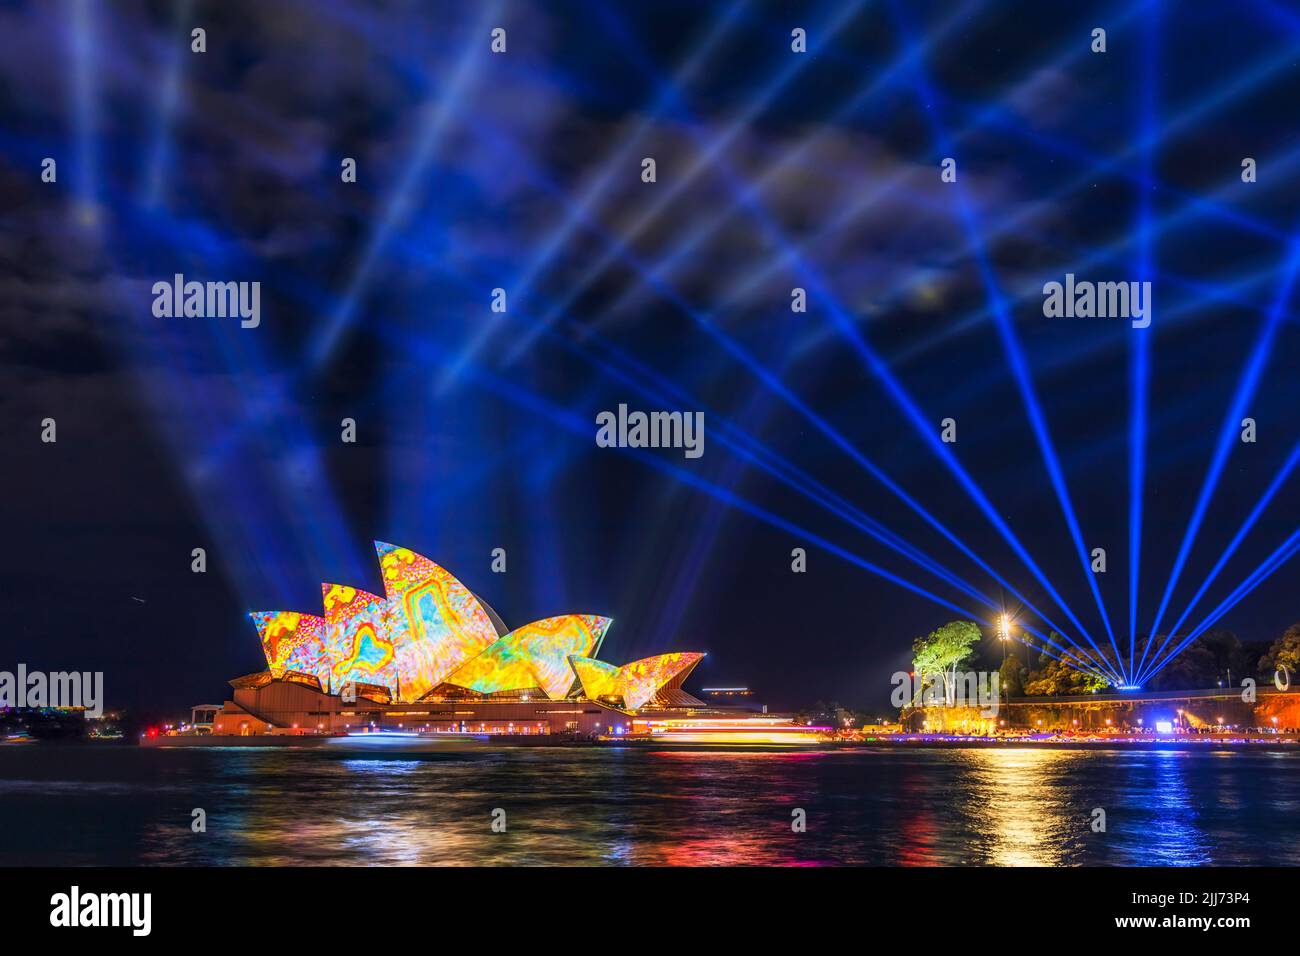 Des lumières et des idées éclatantes de Sydney au-dessus du quartier des affaires de la ville de Sydney, Landmards Aroud Harbour, la nuit. Banque D'Images